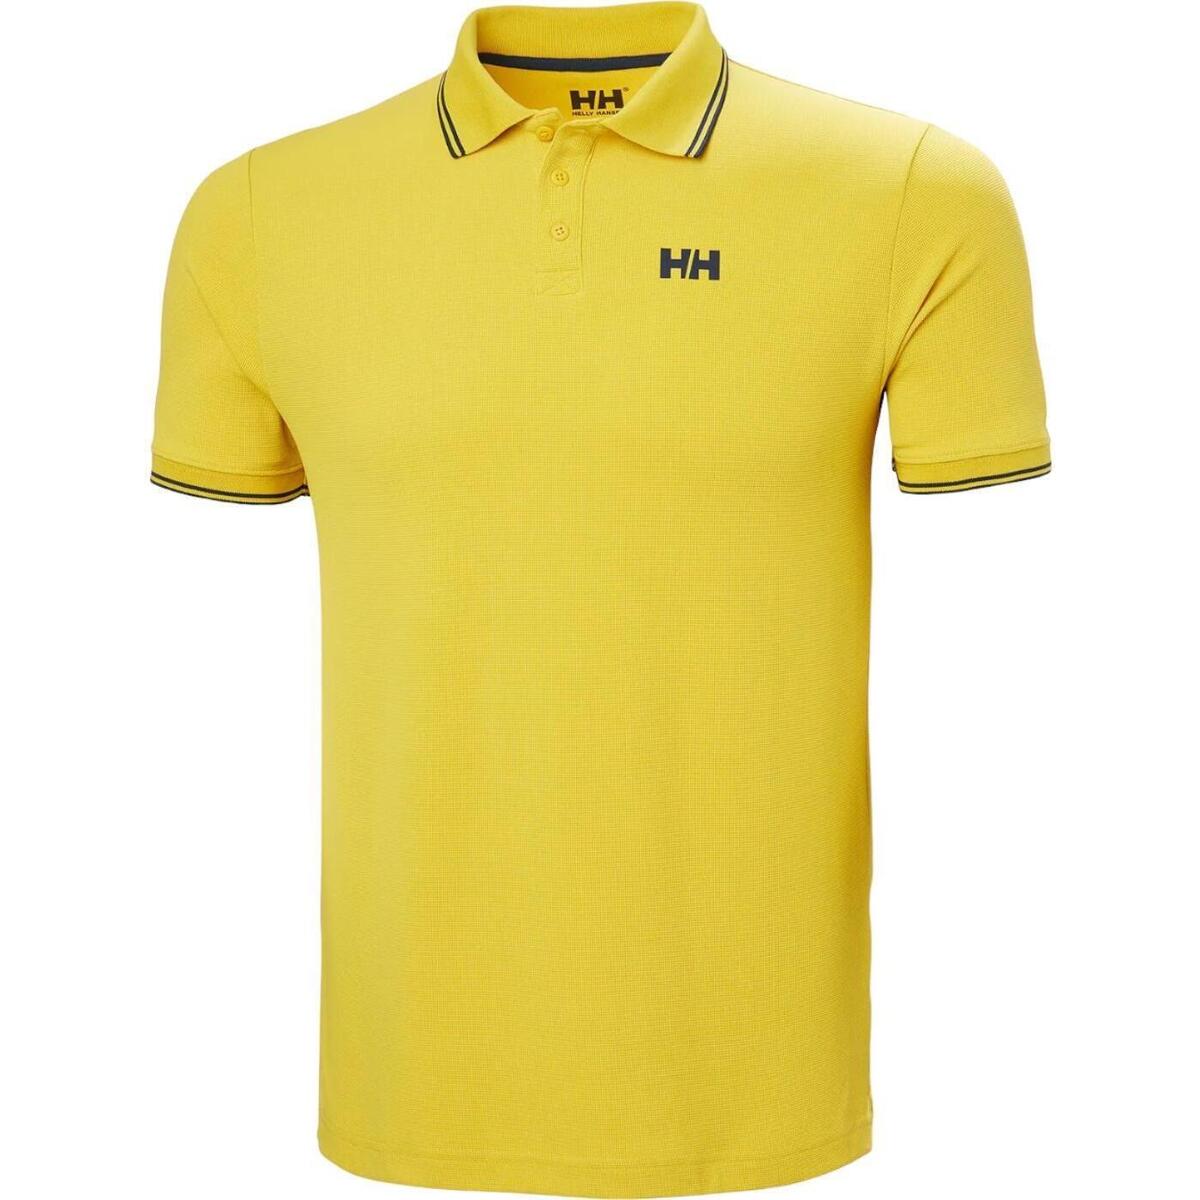 Vêtements Homme Burton Menswear Loungewear-Set mit T-Shirt und Shorts mit seitlichem Streifen in Marineblau  Jaune